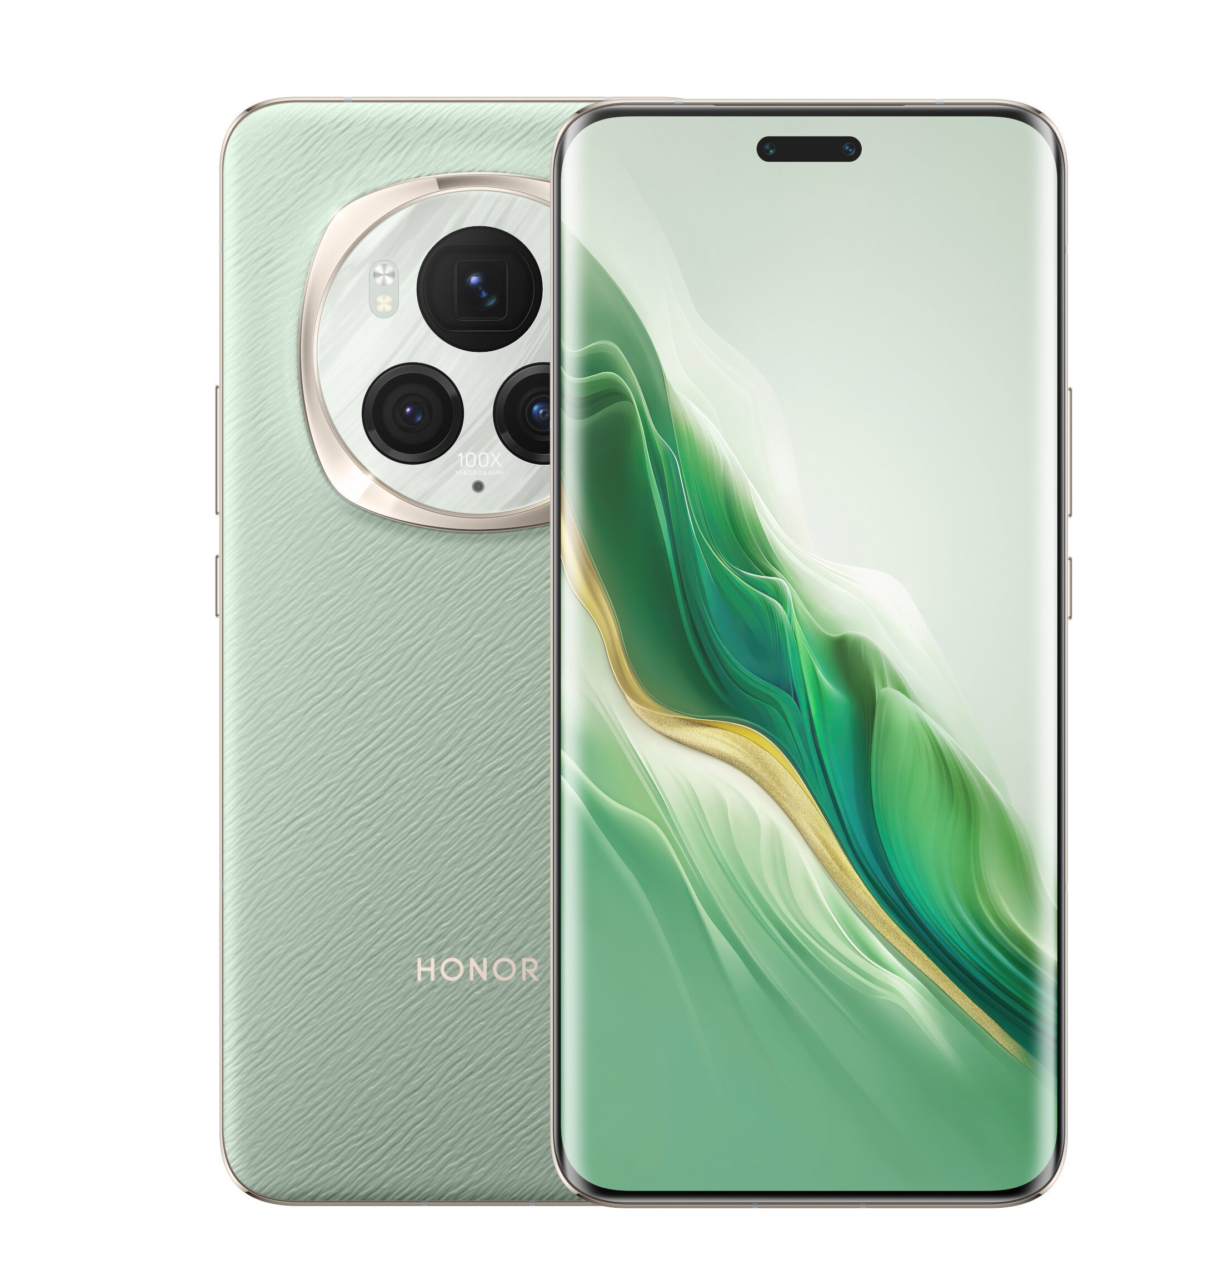 Zielony smartfon Honor z okrągłym modułem aparatu i wyświetlaczem z kolorową grafiką.